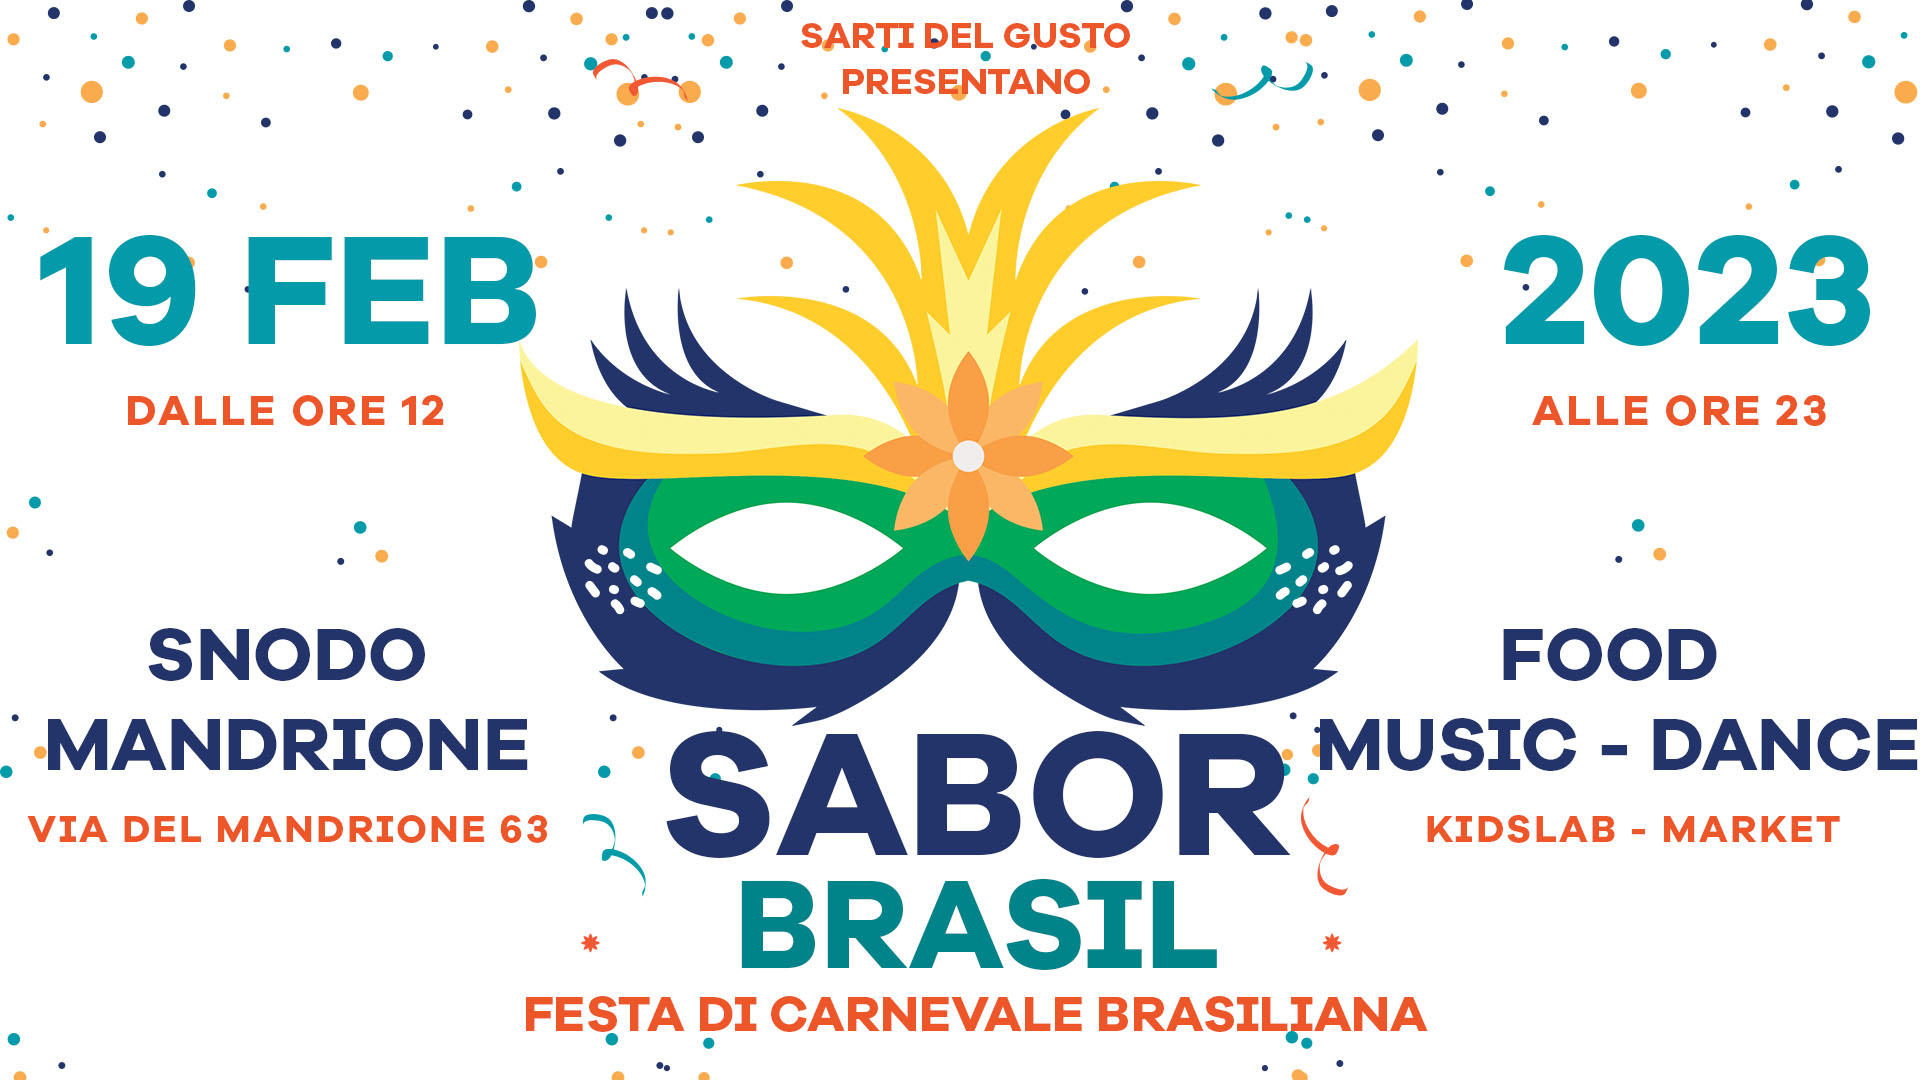 Carnevale Brasiliano